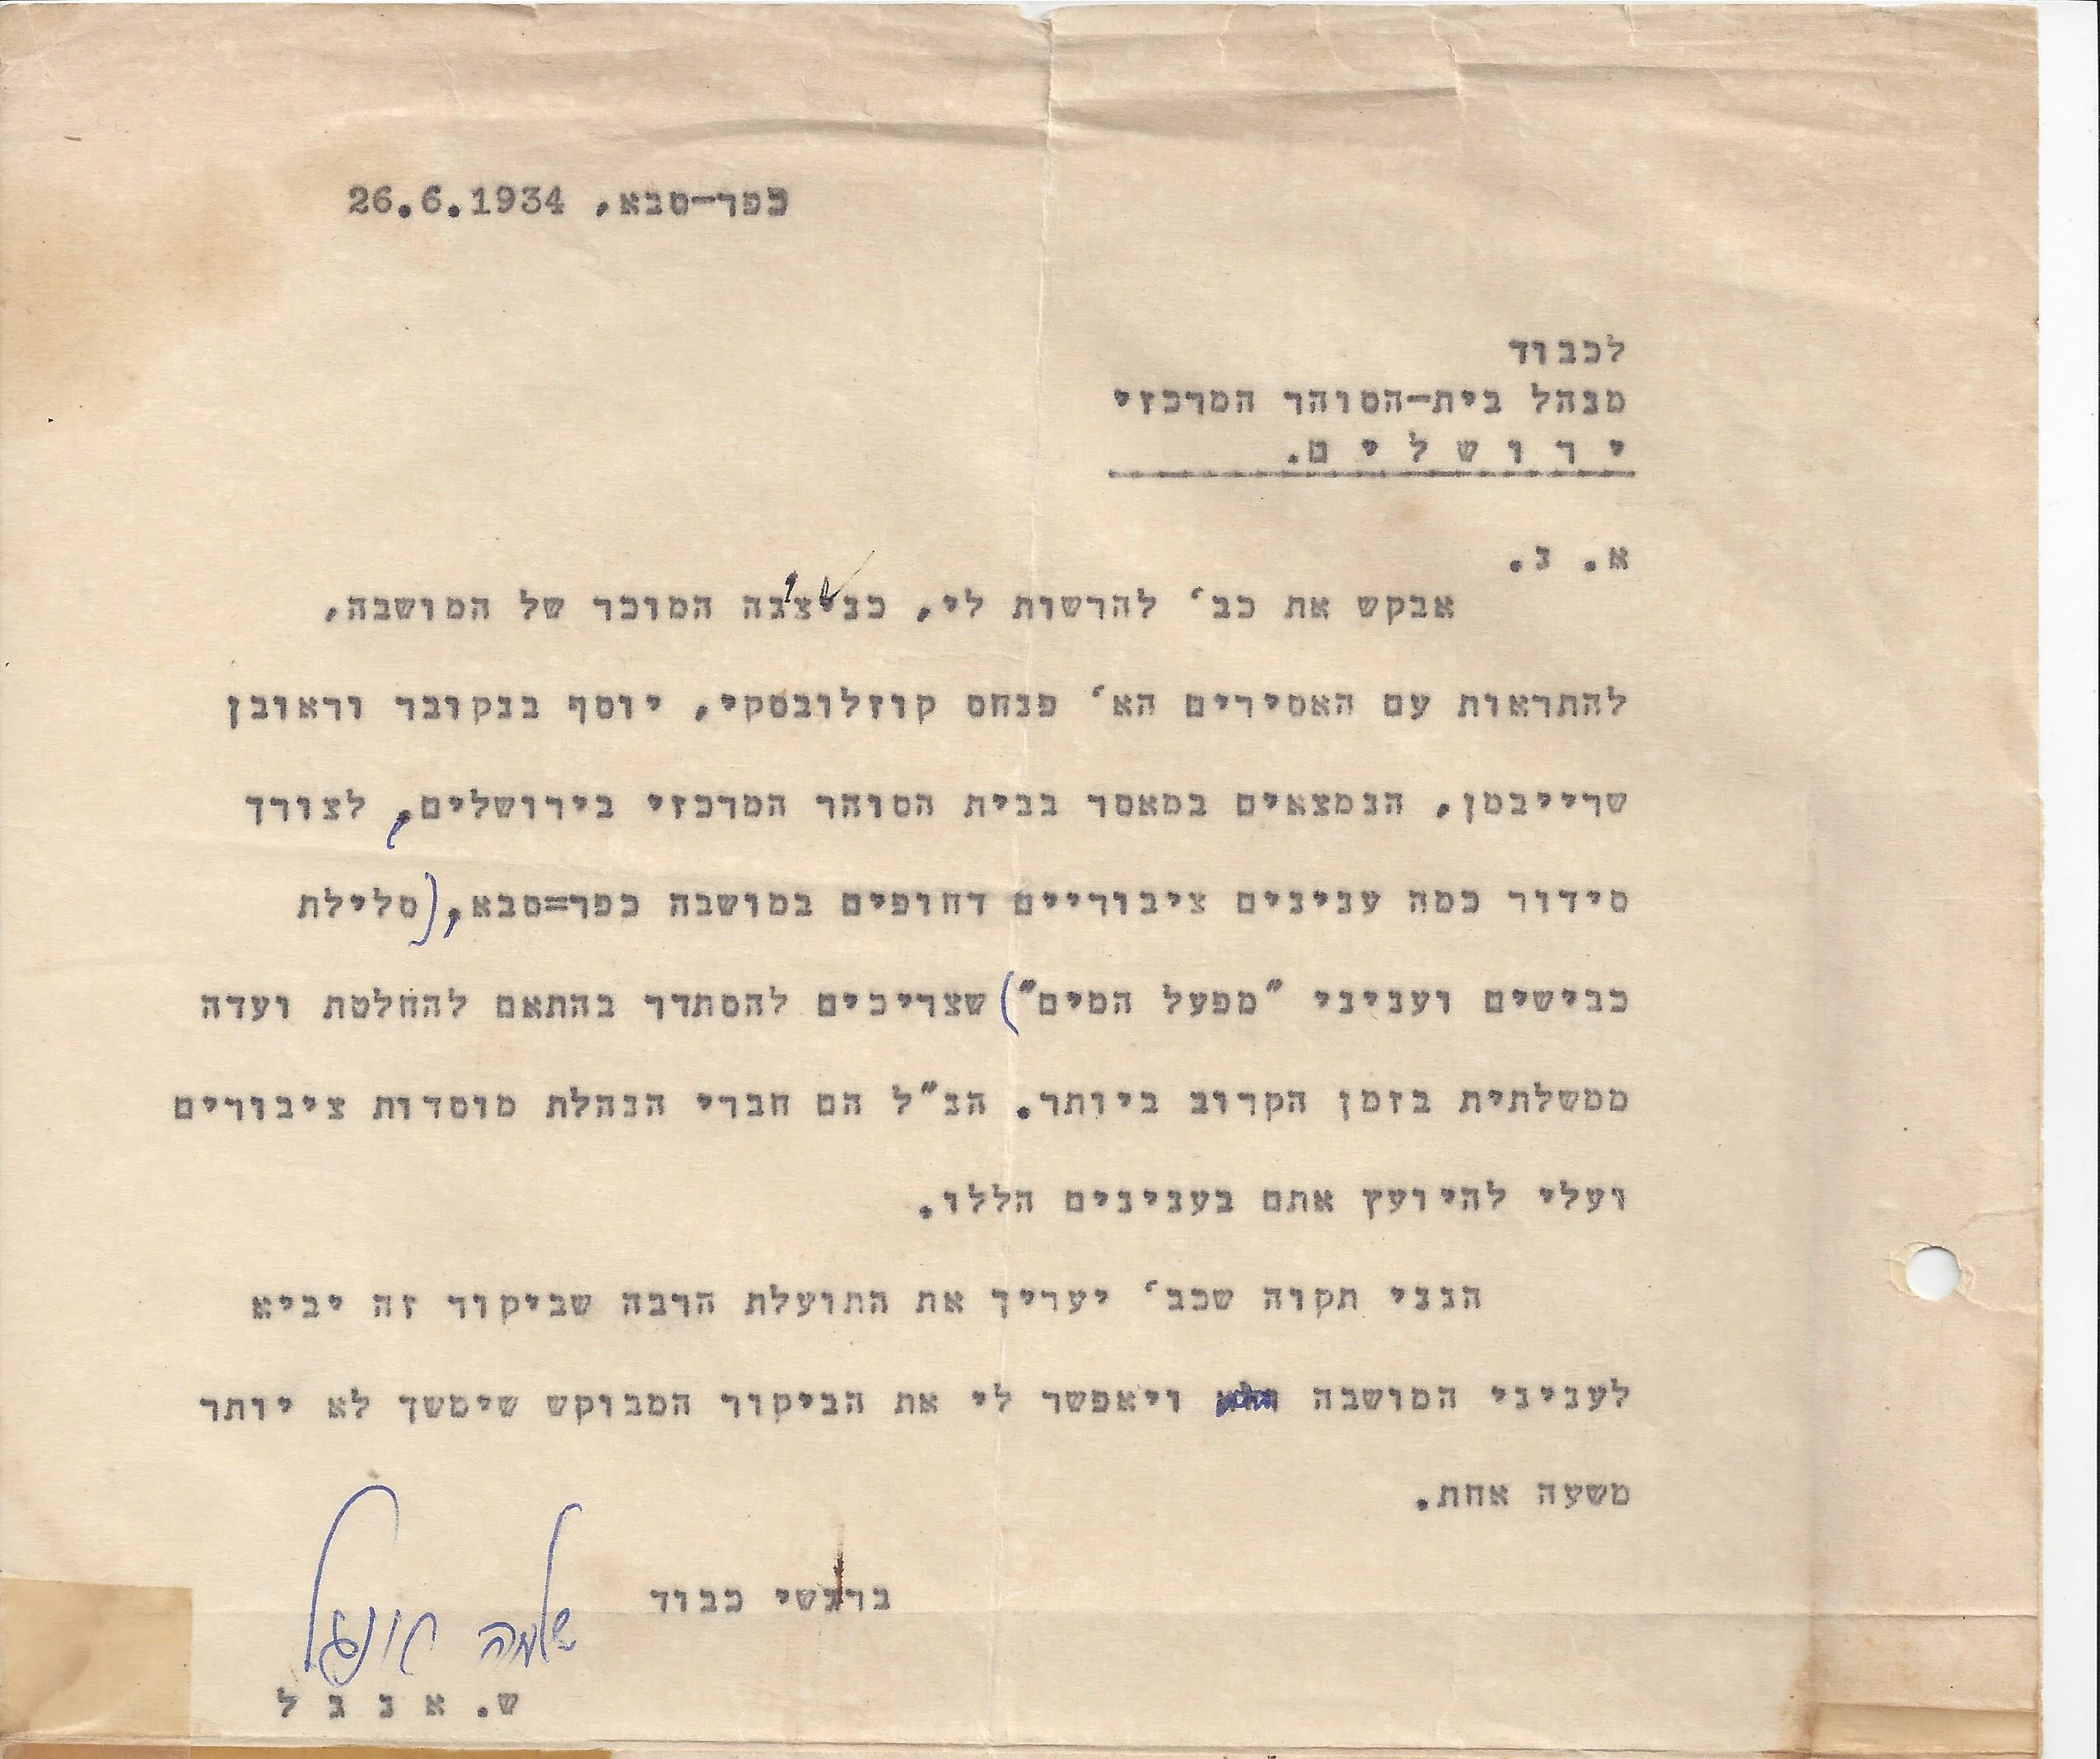  מכתב משלמה אנגל, מוכתר כ''ס, לבית הסוהר מרכזי, ירושלים, יוני 26, 1934